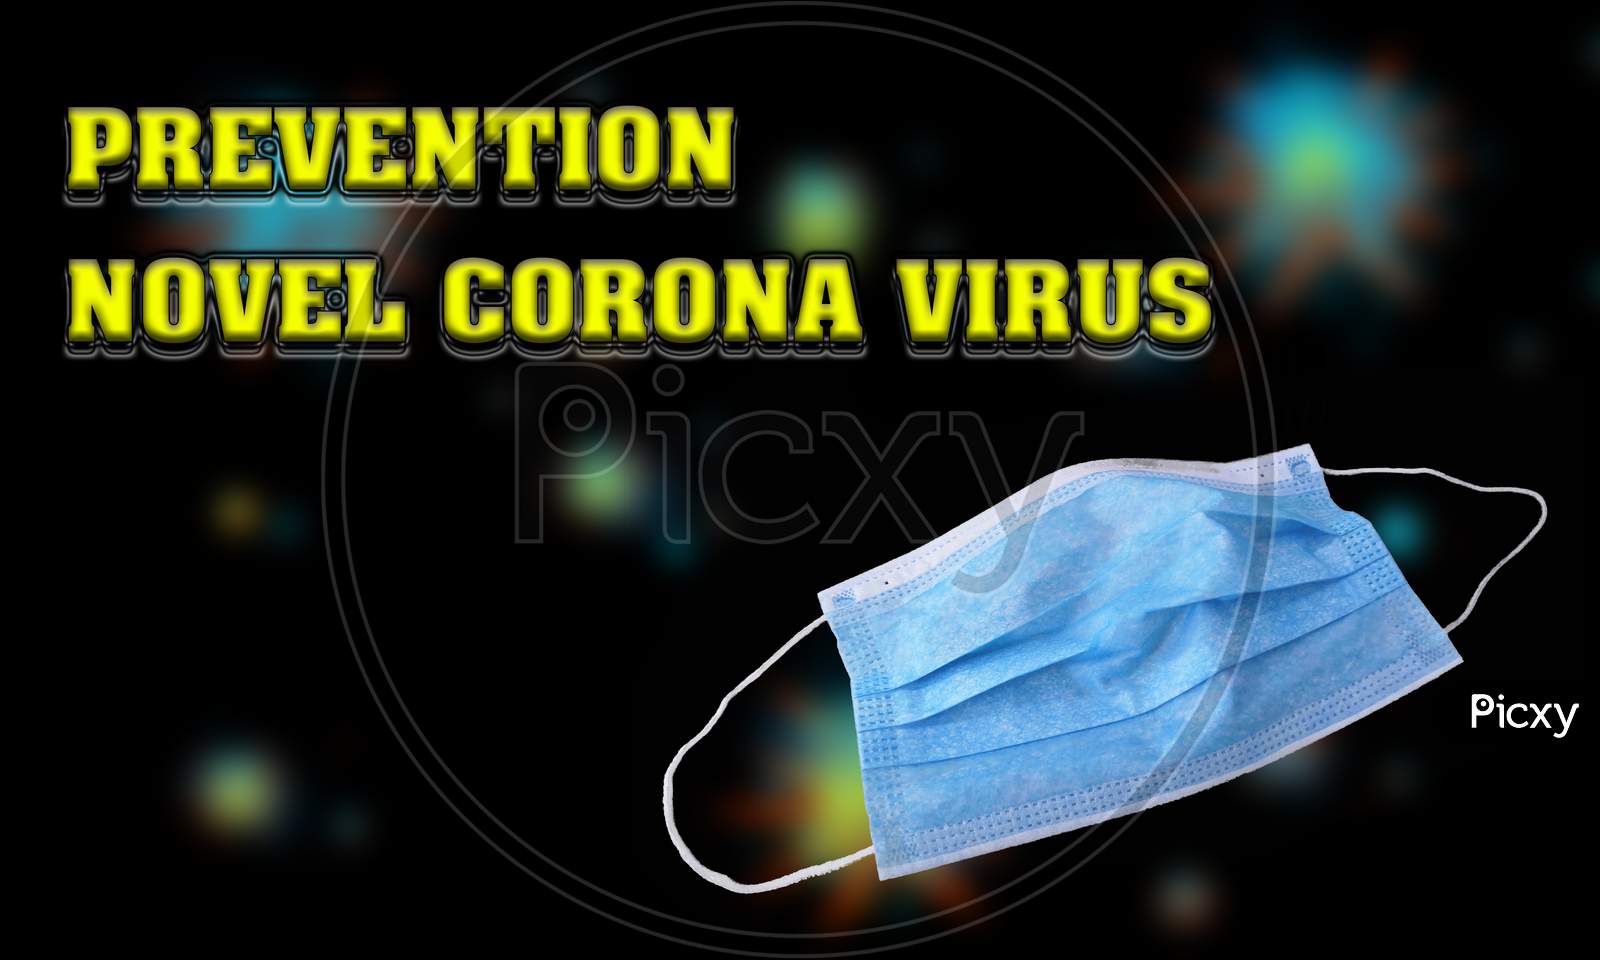 Wear The Mask And Prevent Novel Corona Virus